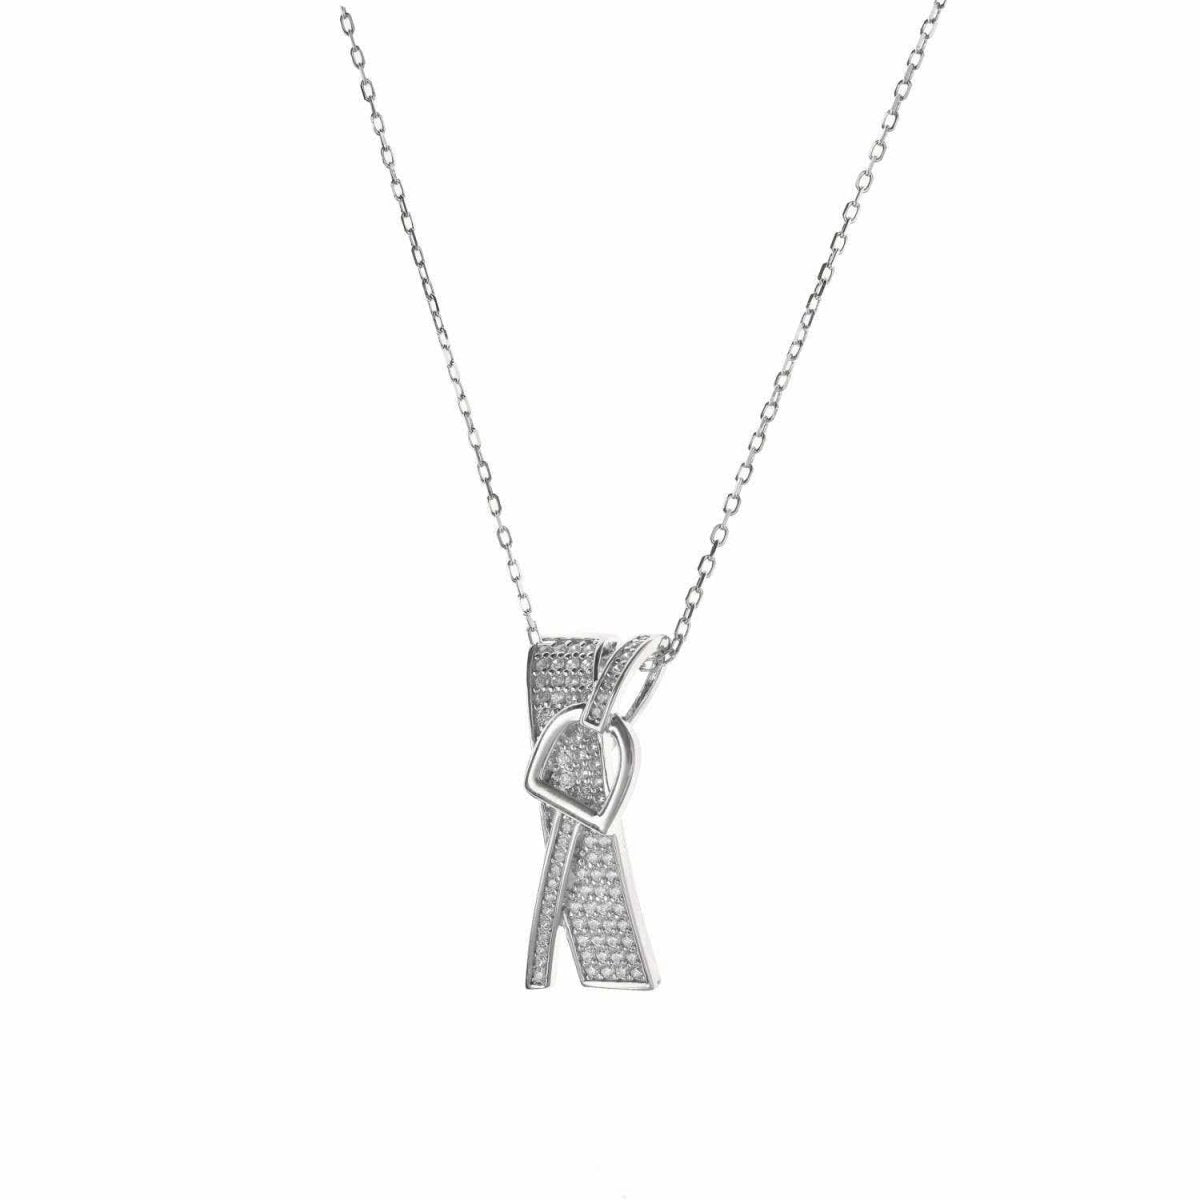 Collar · Colgante brillante de plata diseño hebillas con engaste circonitas raíl cruzado